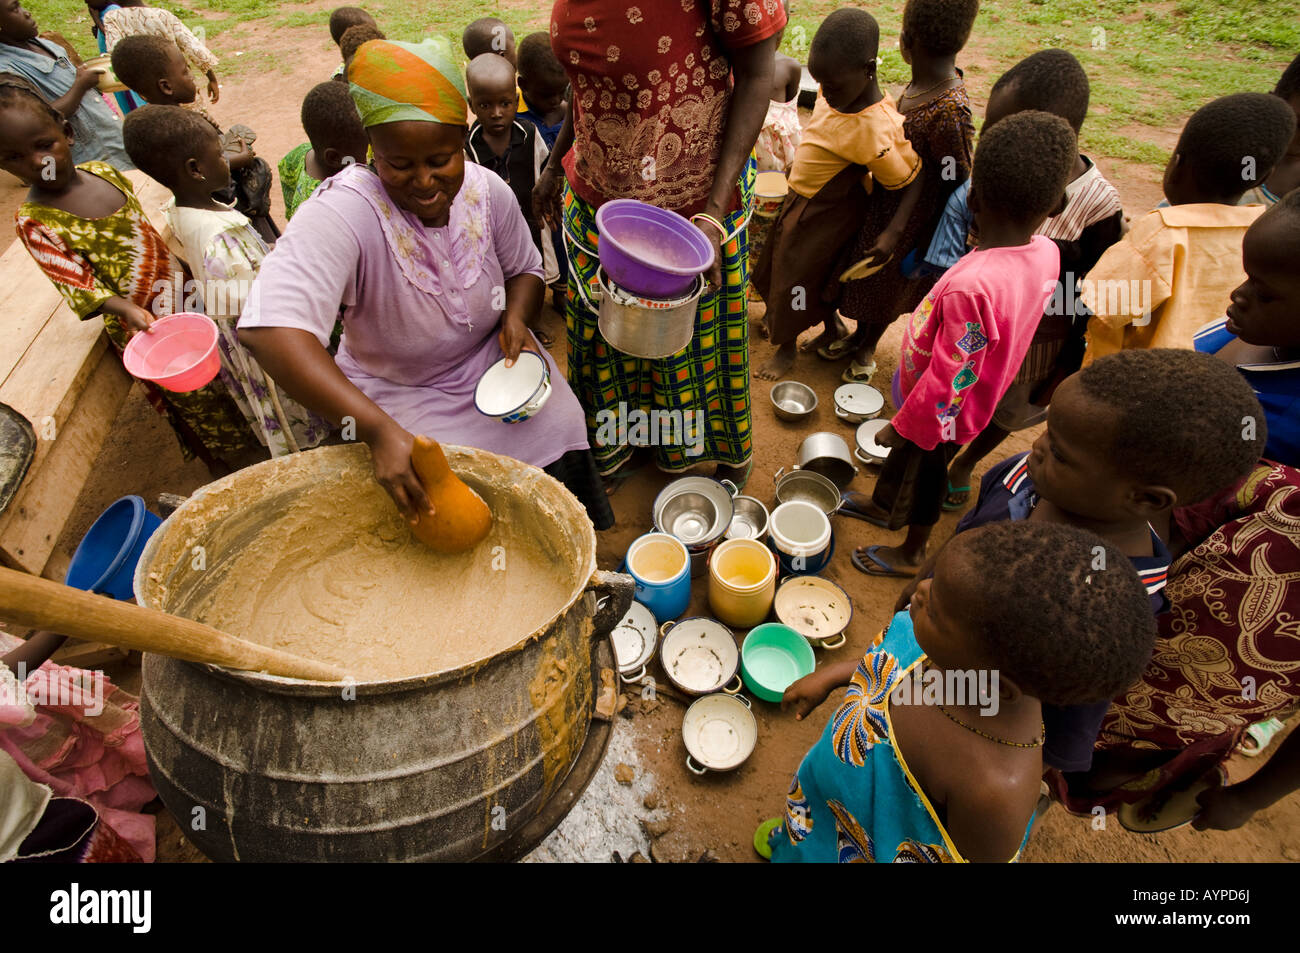 Las mujeres servir el almuerzo para los niños de la escuela primaria Nyologu fuera de la escuela en el pueblo de Ghana septentrional Nyologu Foto de stock